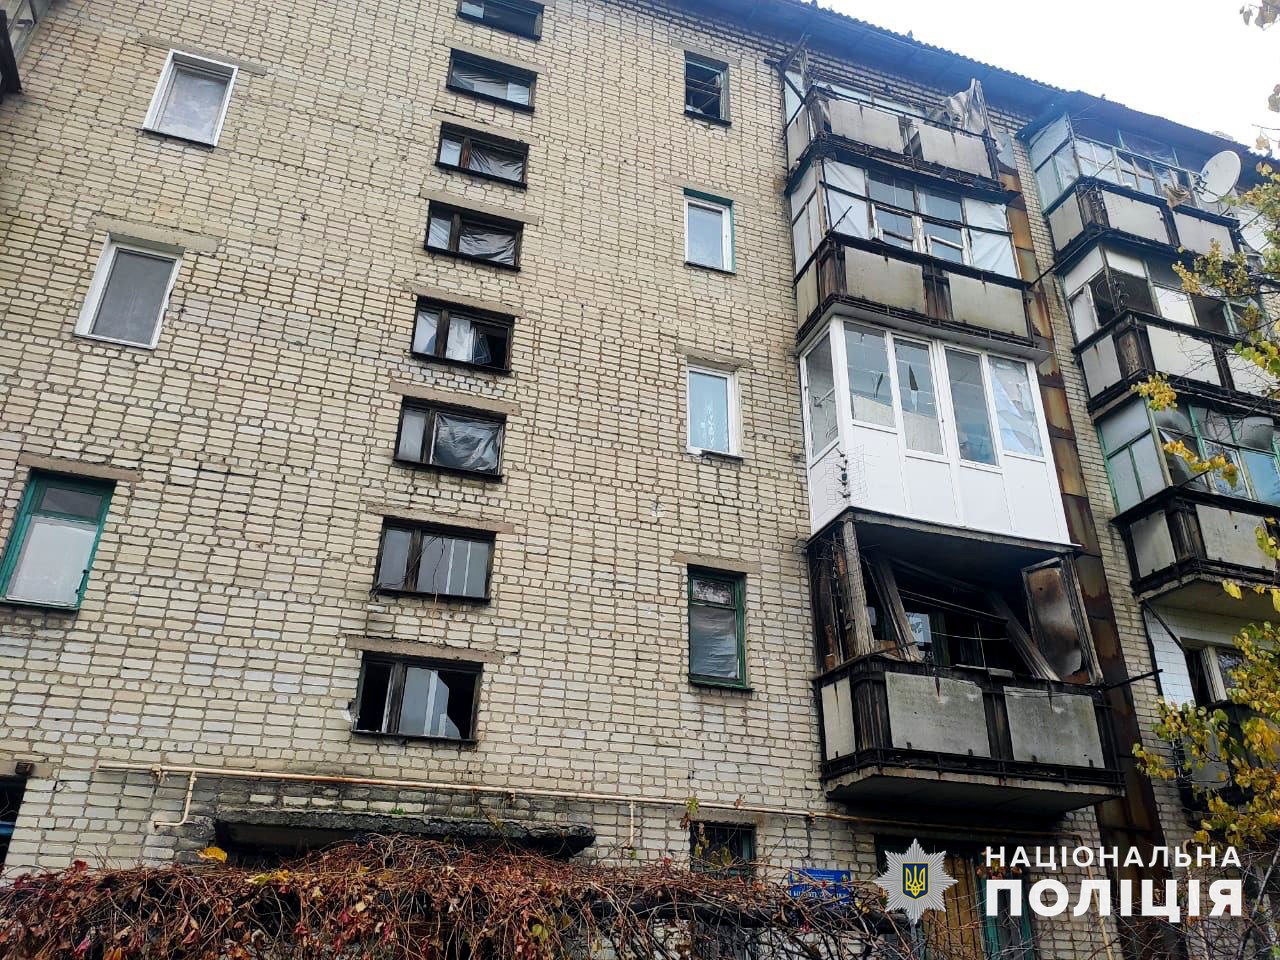 Поврежден многоквартирный дом. Фото: полиция Донецкой области